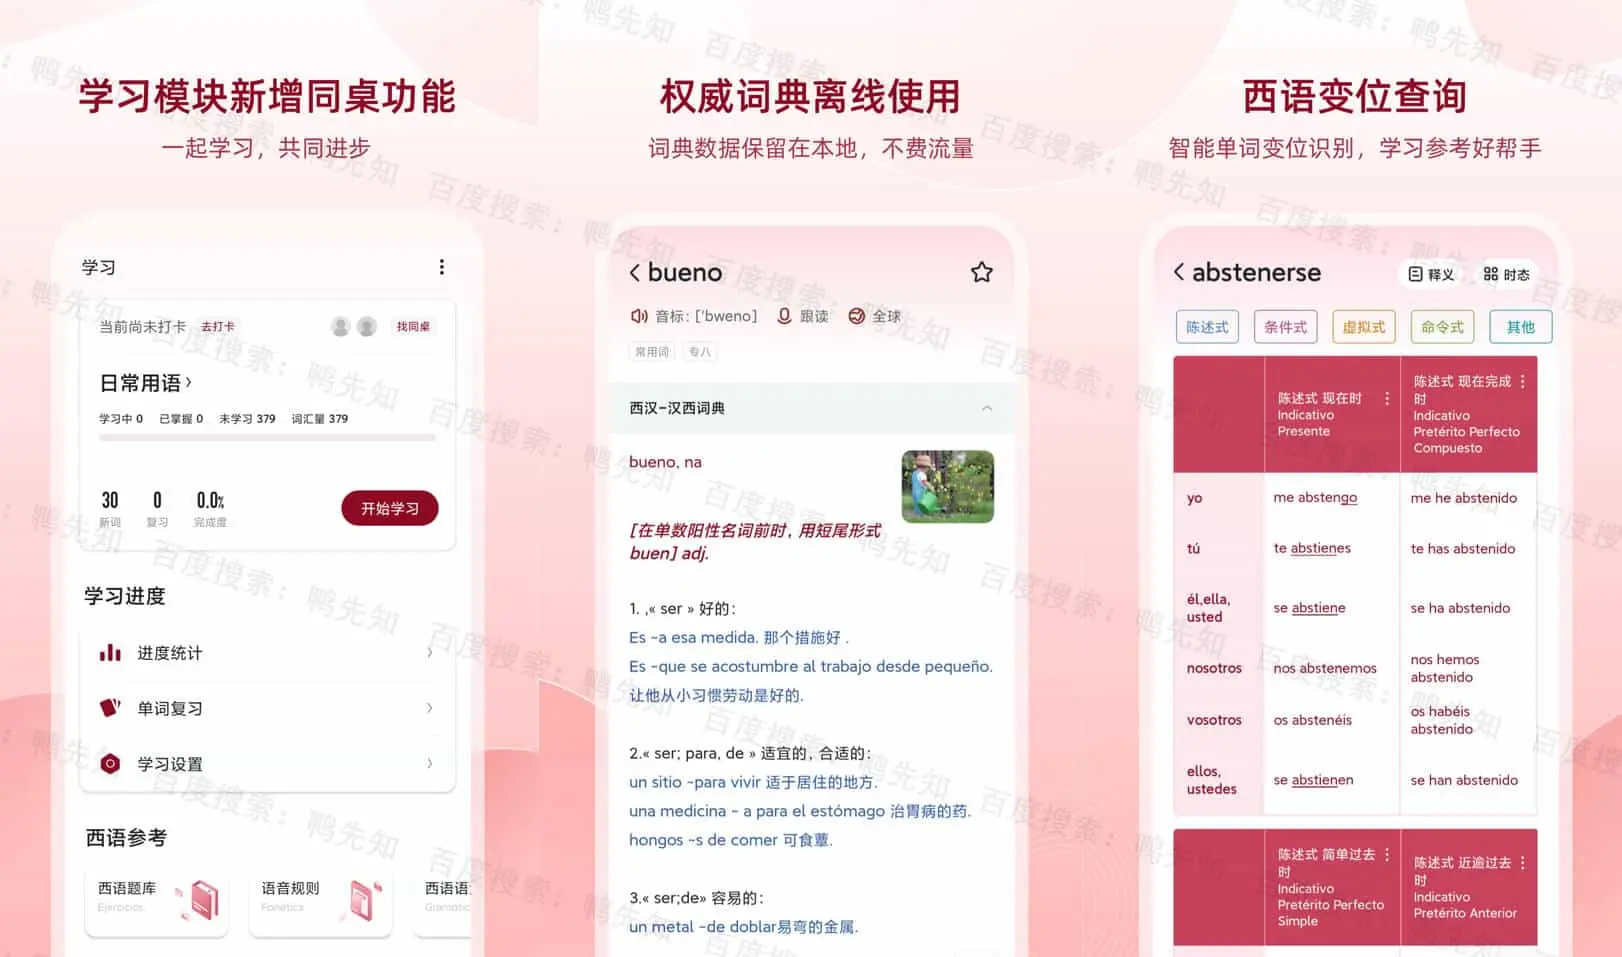 西语助手 v9.3.7 中国西语学习者特别设计的教育软件，去广告解锁高级版